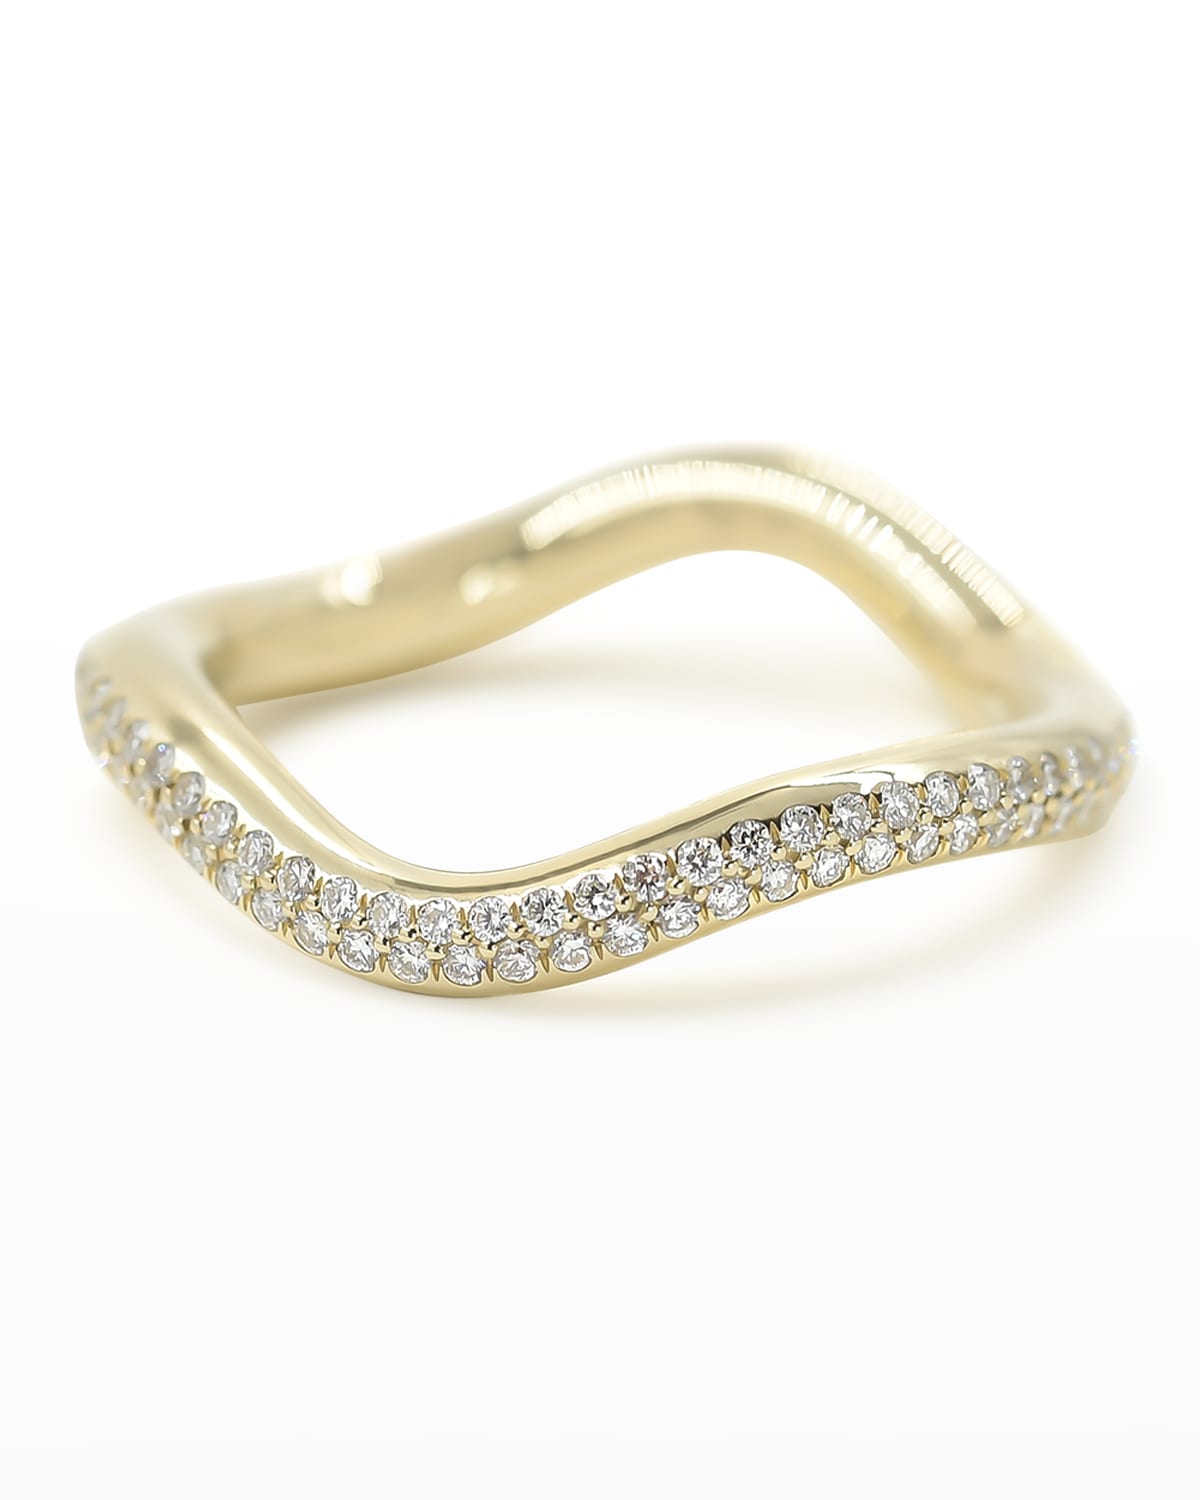 BONDEYE JEWELRY Popie 14k Gold Wave Ring with Diamonds